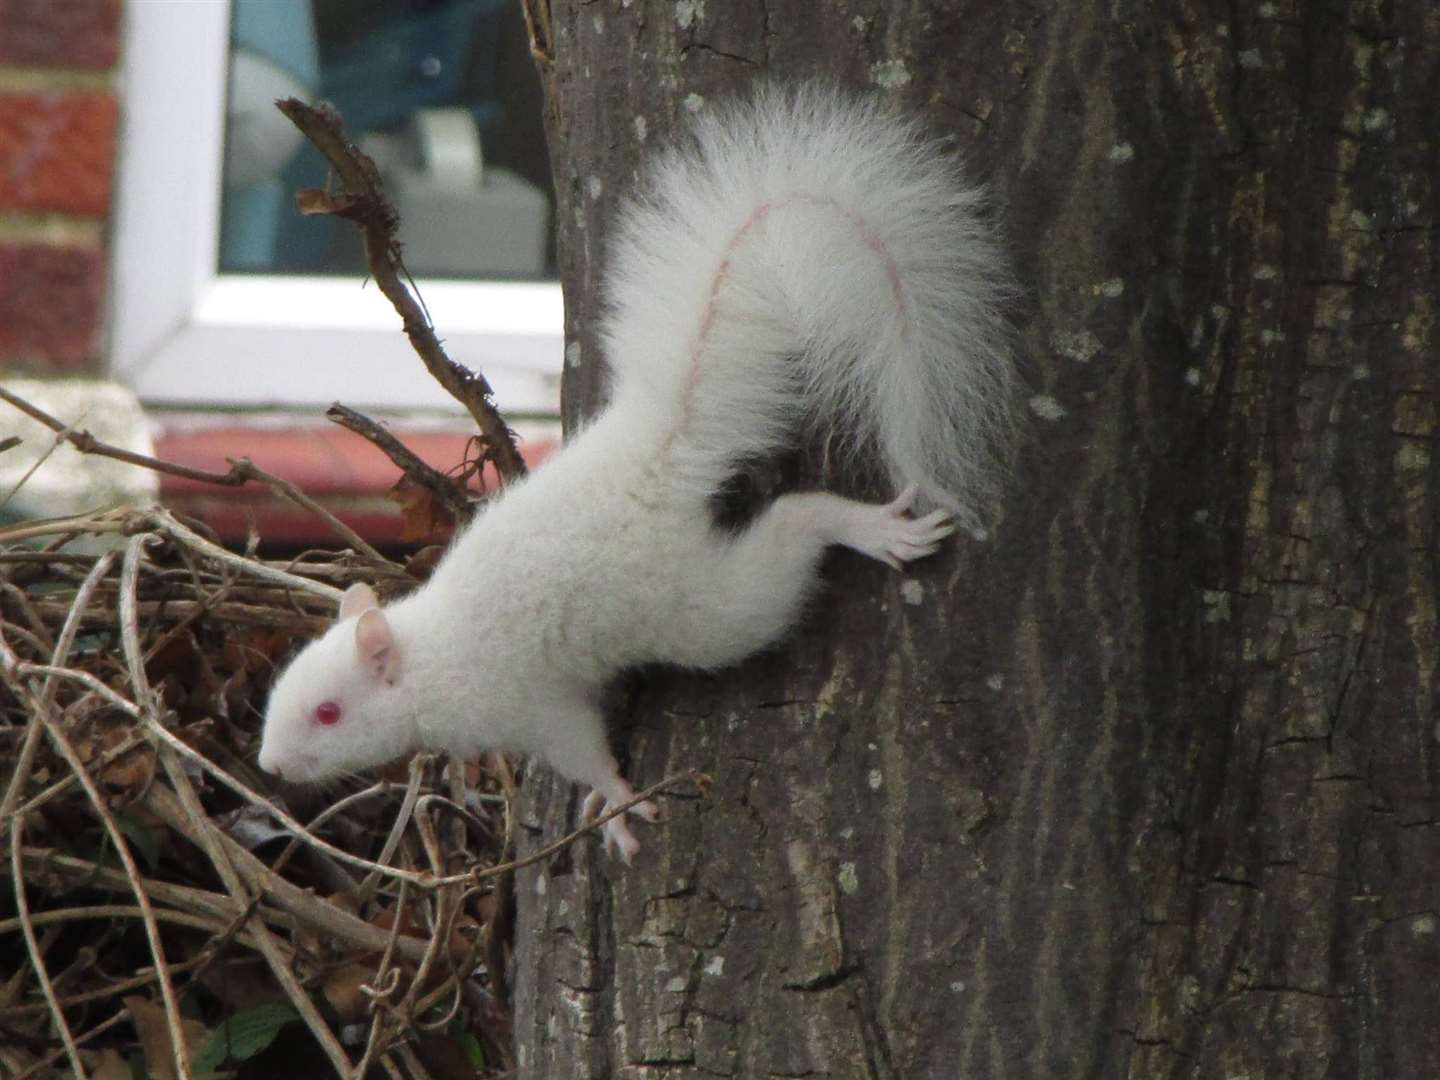 A rare albino squirrel has been spotted in a suburban back garden